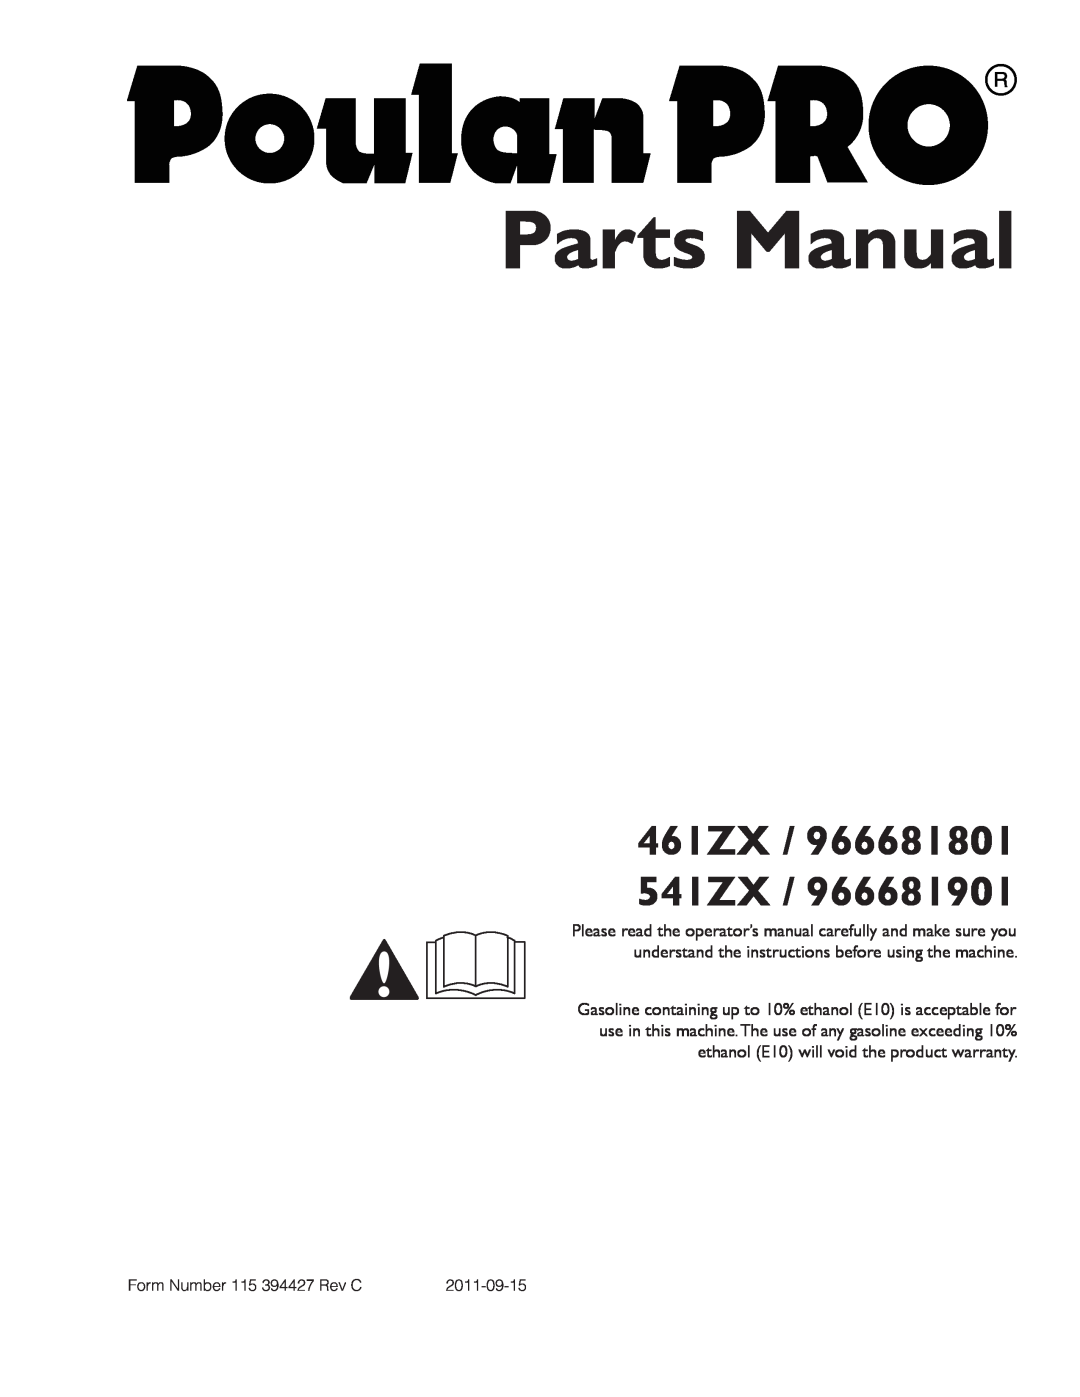 Poulan warranty Operator Manual, 461ZX / 966681801 541ZX 